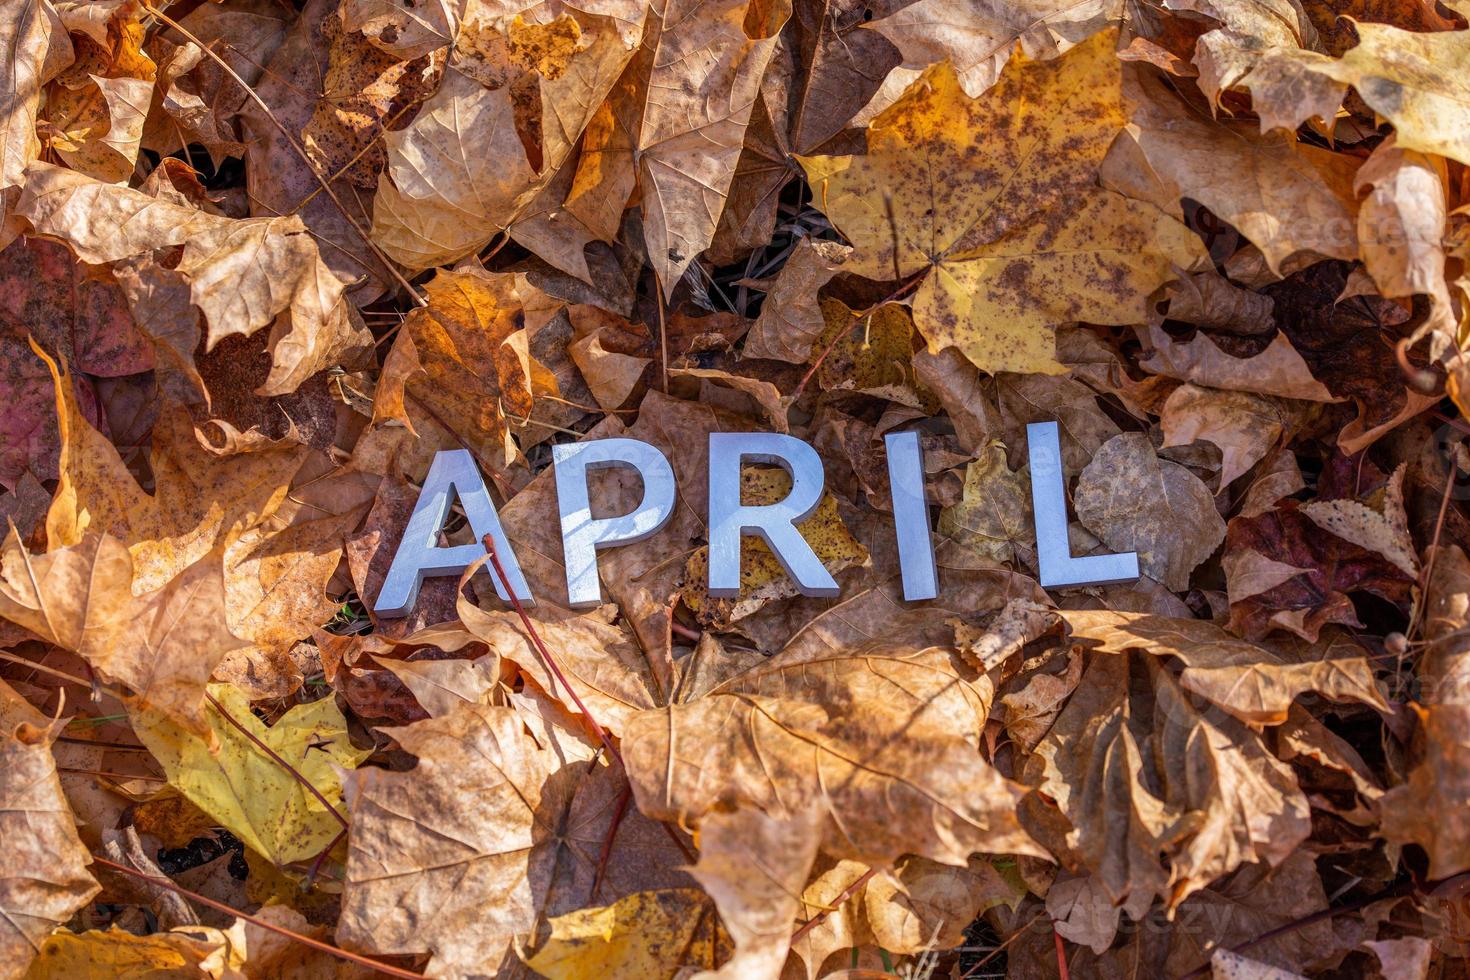 le mot avril posé avec des lettres en métal argenté sur le sol des feuilles d'érable sèches photo